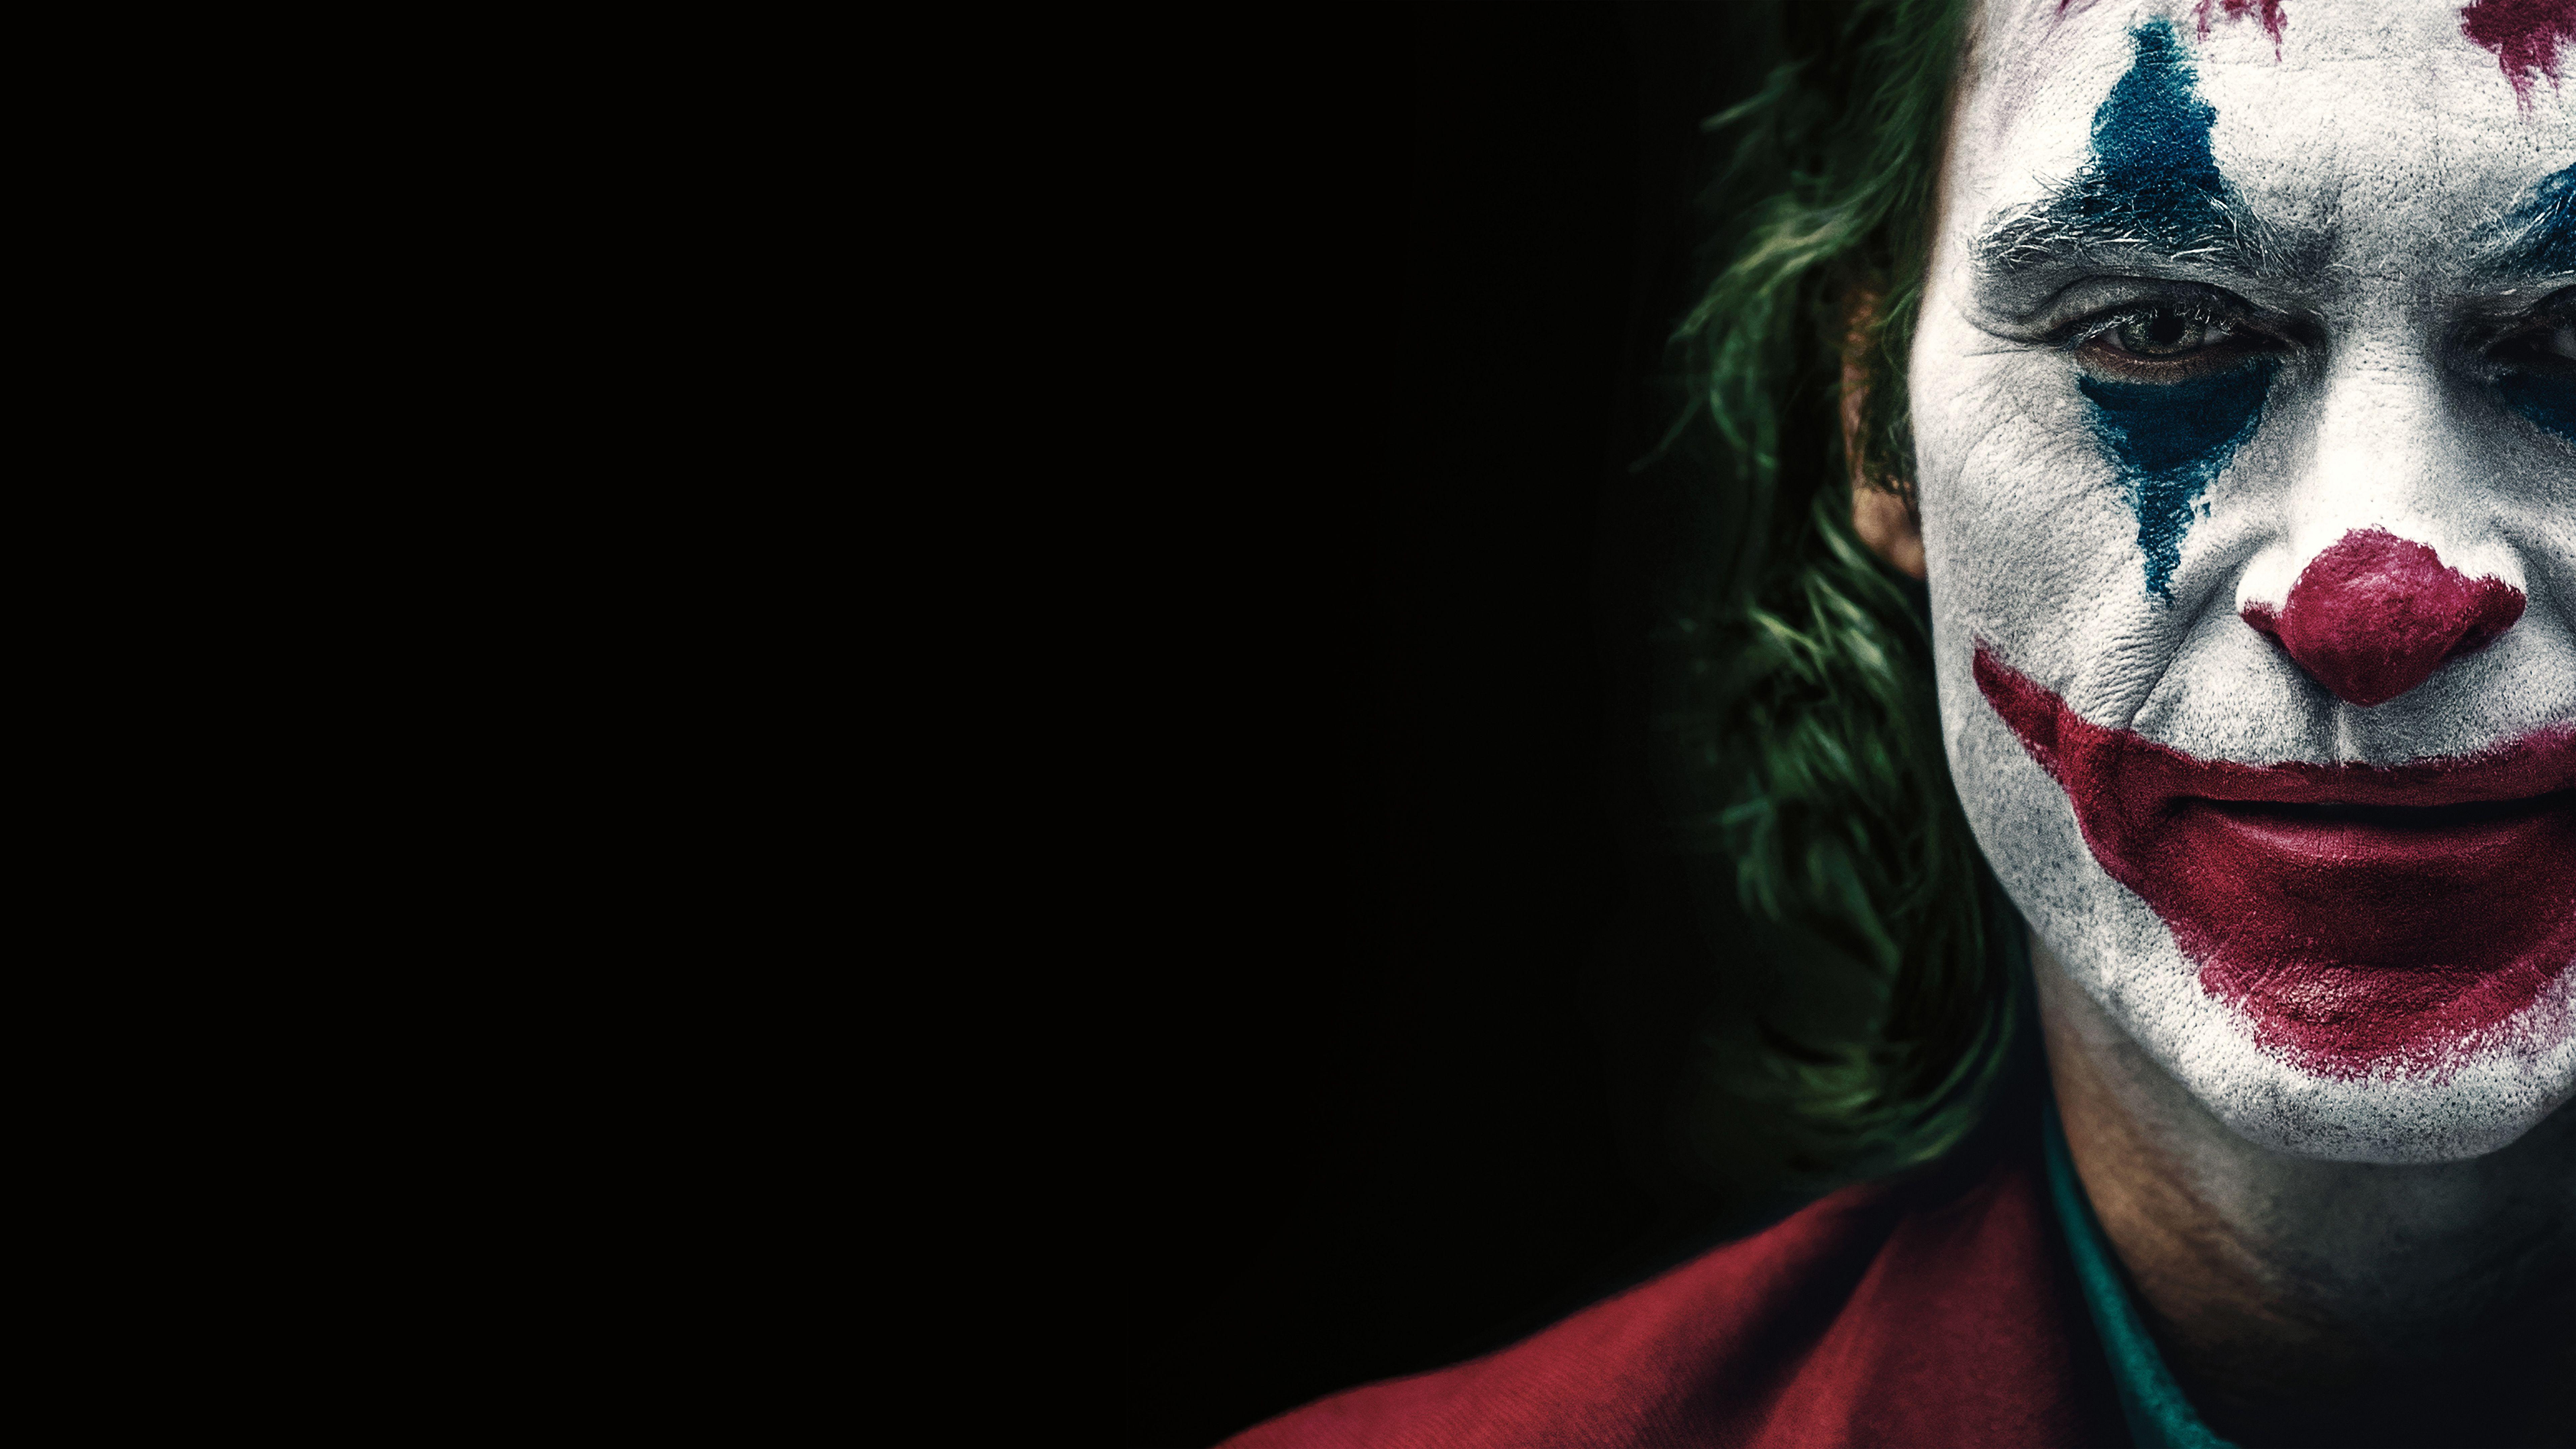 Joker 4K hình nền: Góc nhìn sống động về nhân vật Joker nổi tiếng. Dành cho những fan yêu thích phim ảnh và muốn tìm kiếm những hình nền đầy cảm xúc với độ phân giải 4K.